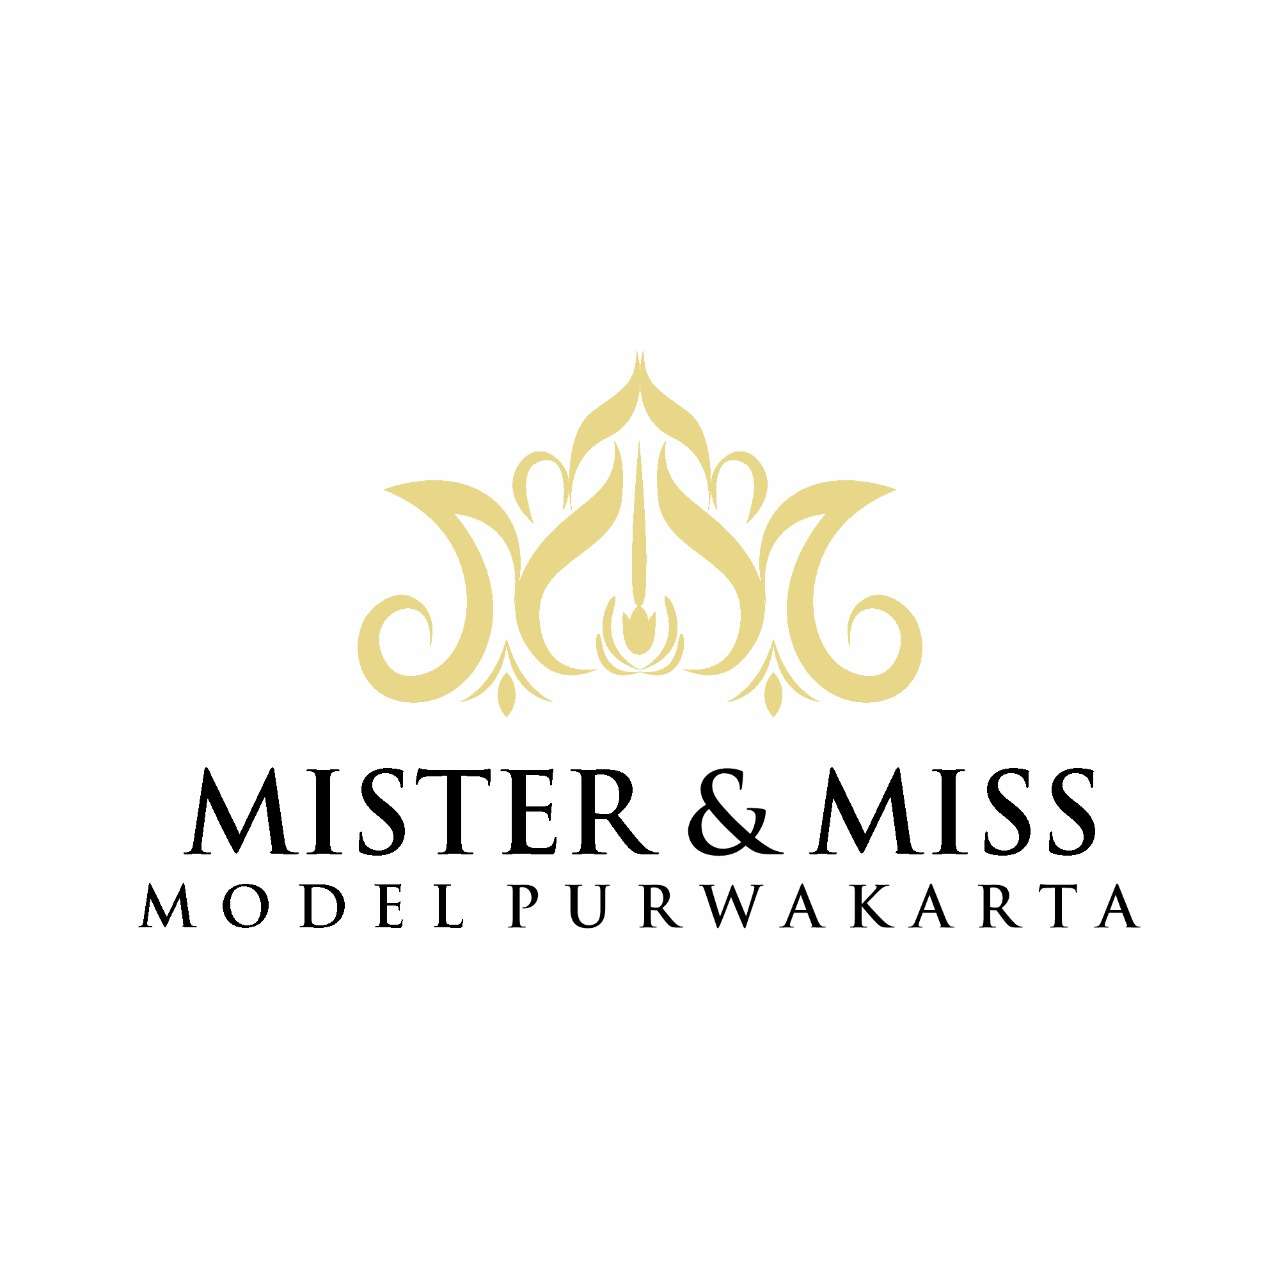 MISTER & MISS MODEL PURWAKARTA 2022